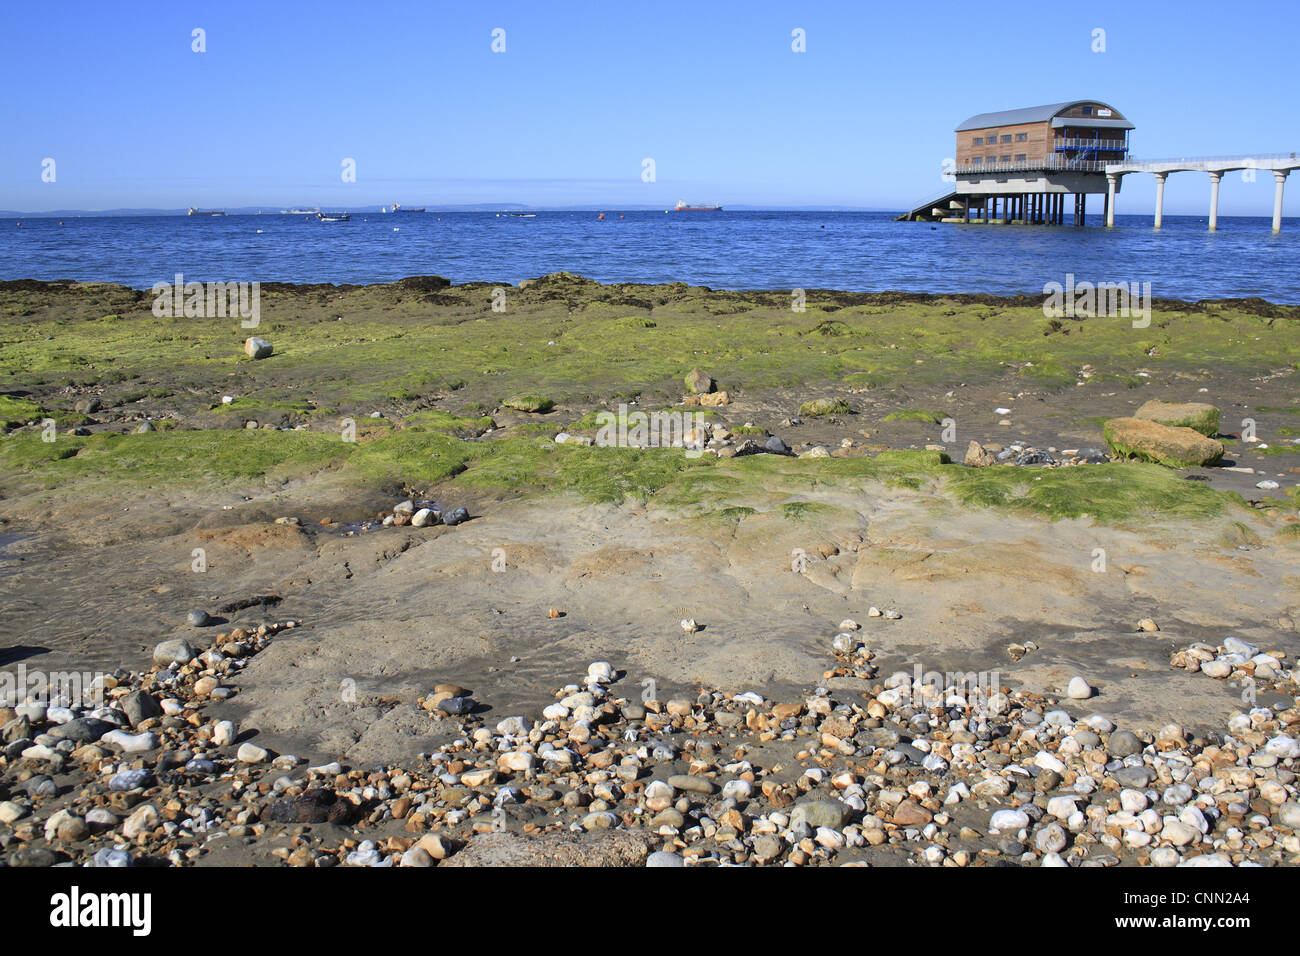 Piton rocheux exposés sur la plage à marée basse Station de sauvetage sauvetage boathouse Bembridge Bembridge Isle Wight Angleterre juin Banque D'Images